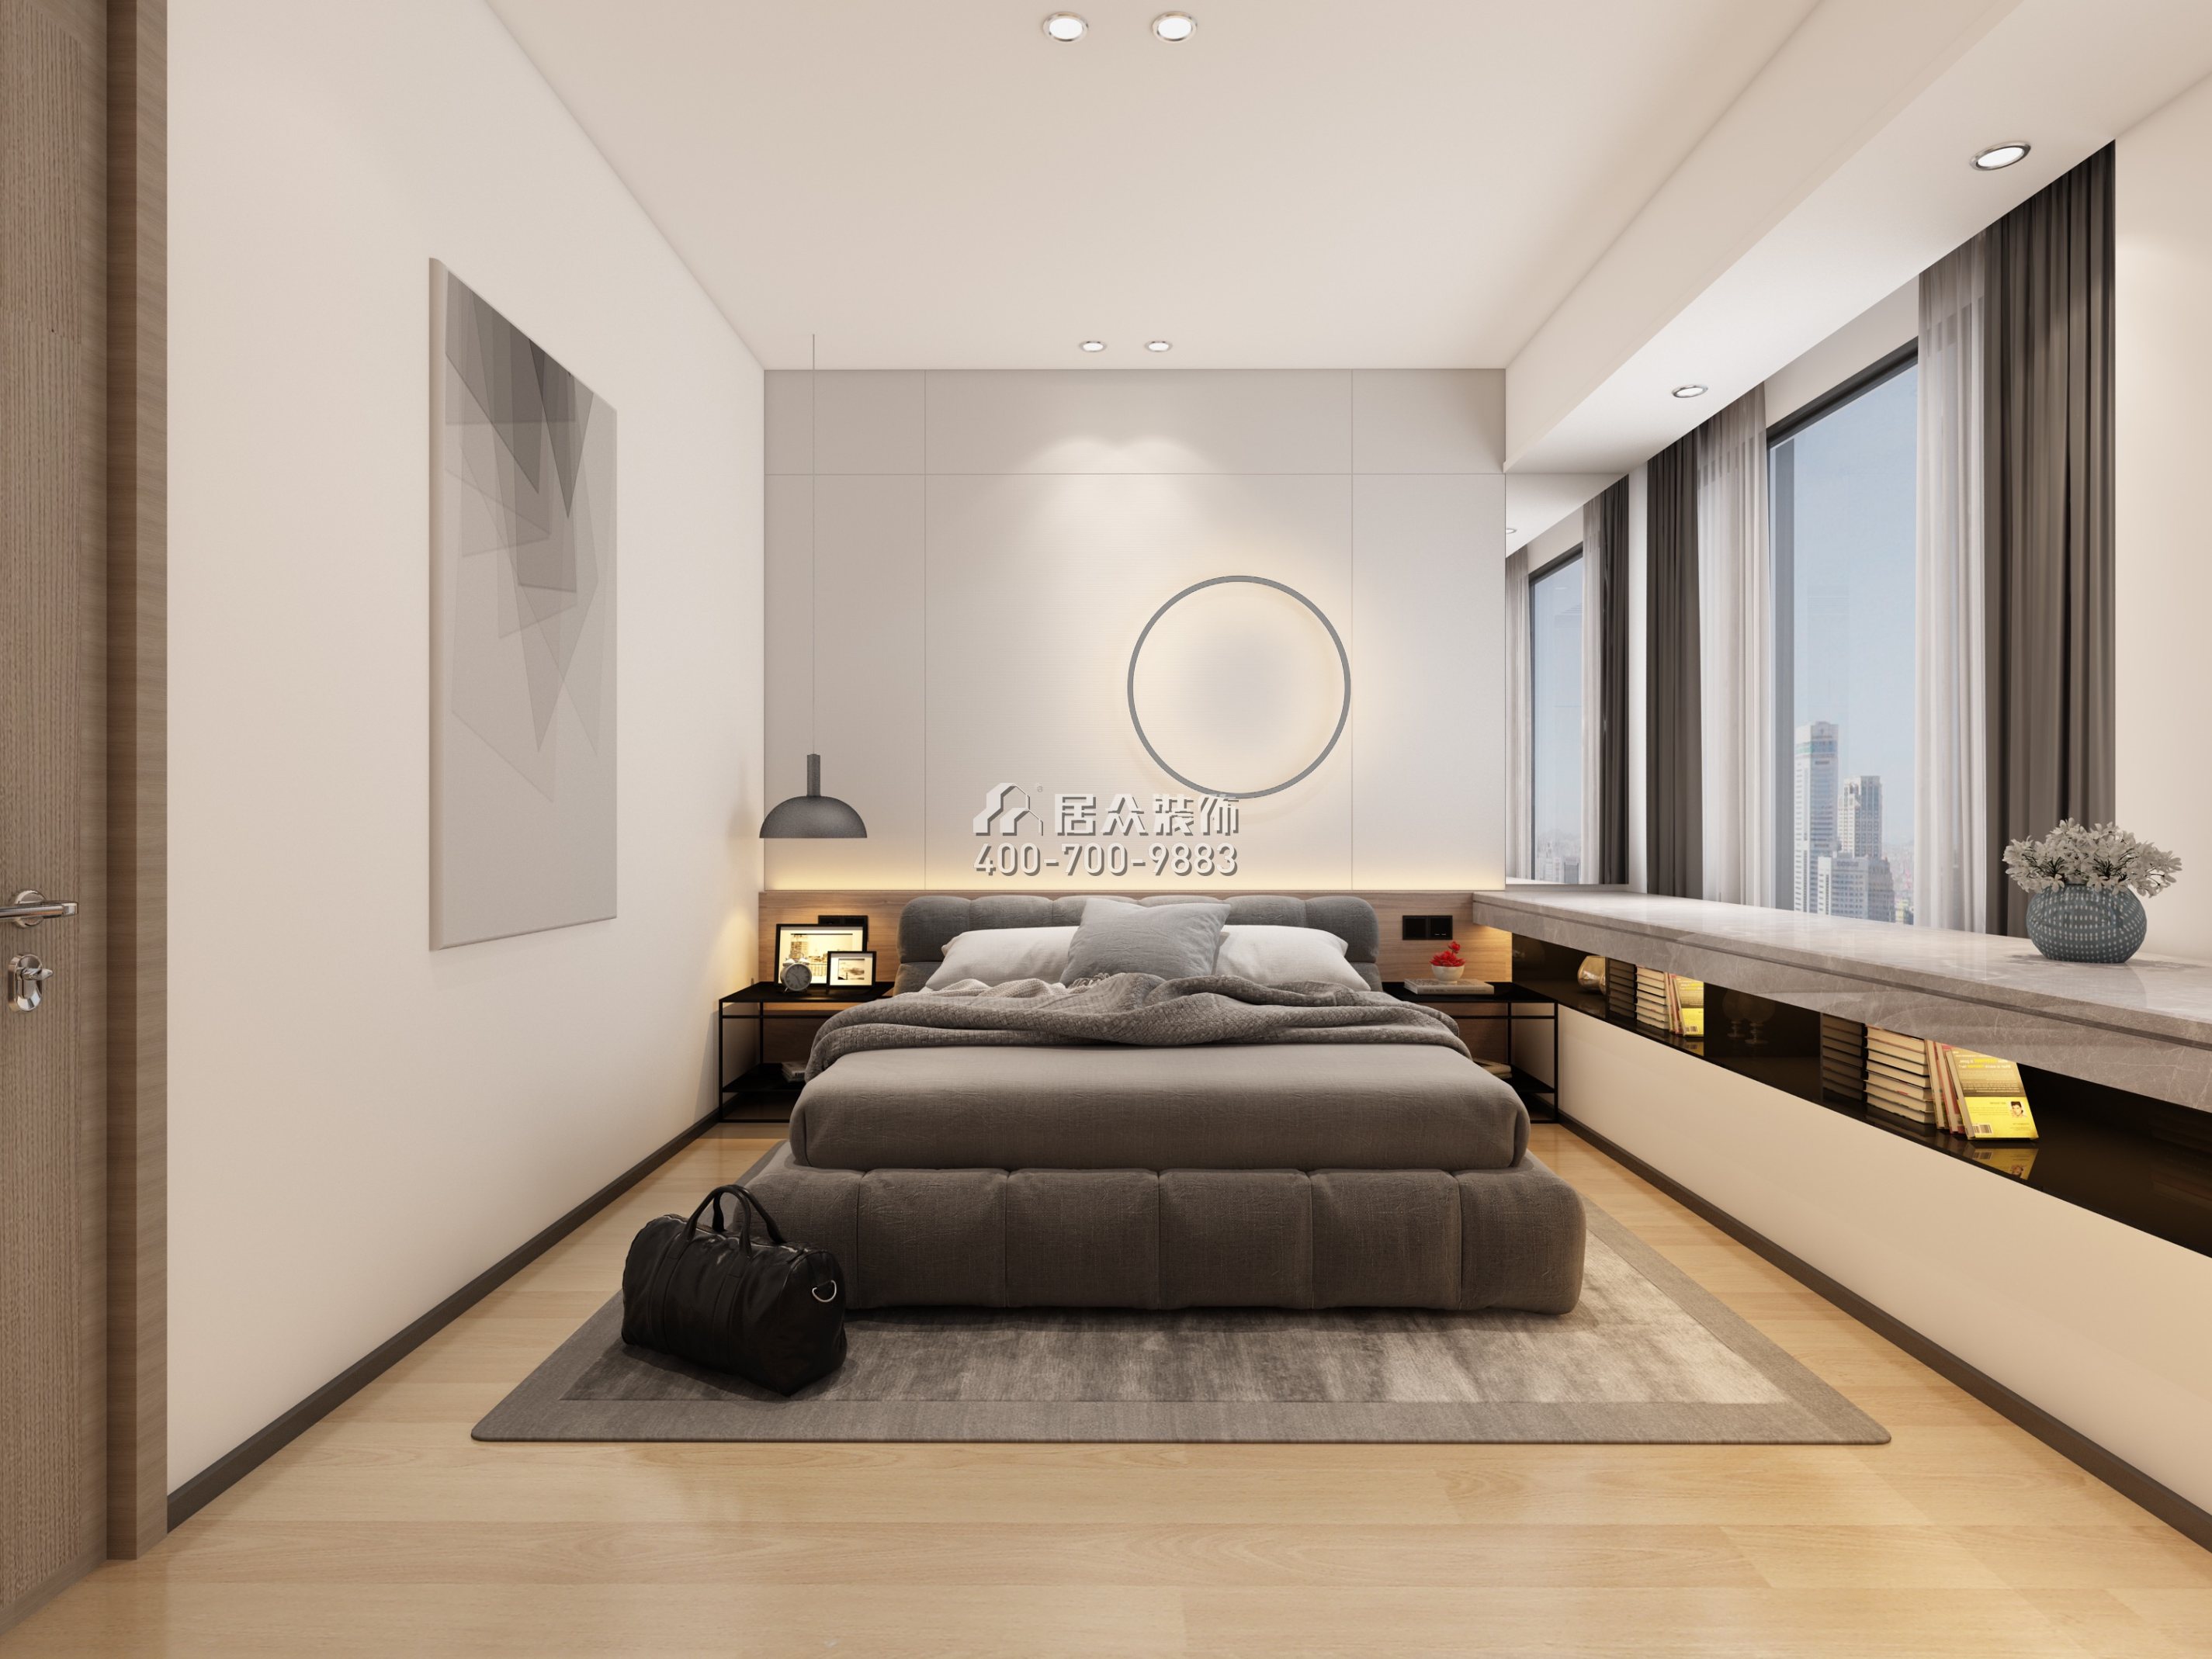 港丽豪园135平方米现代简约风格平层户型卧室装修效果图